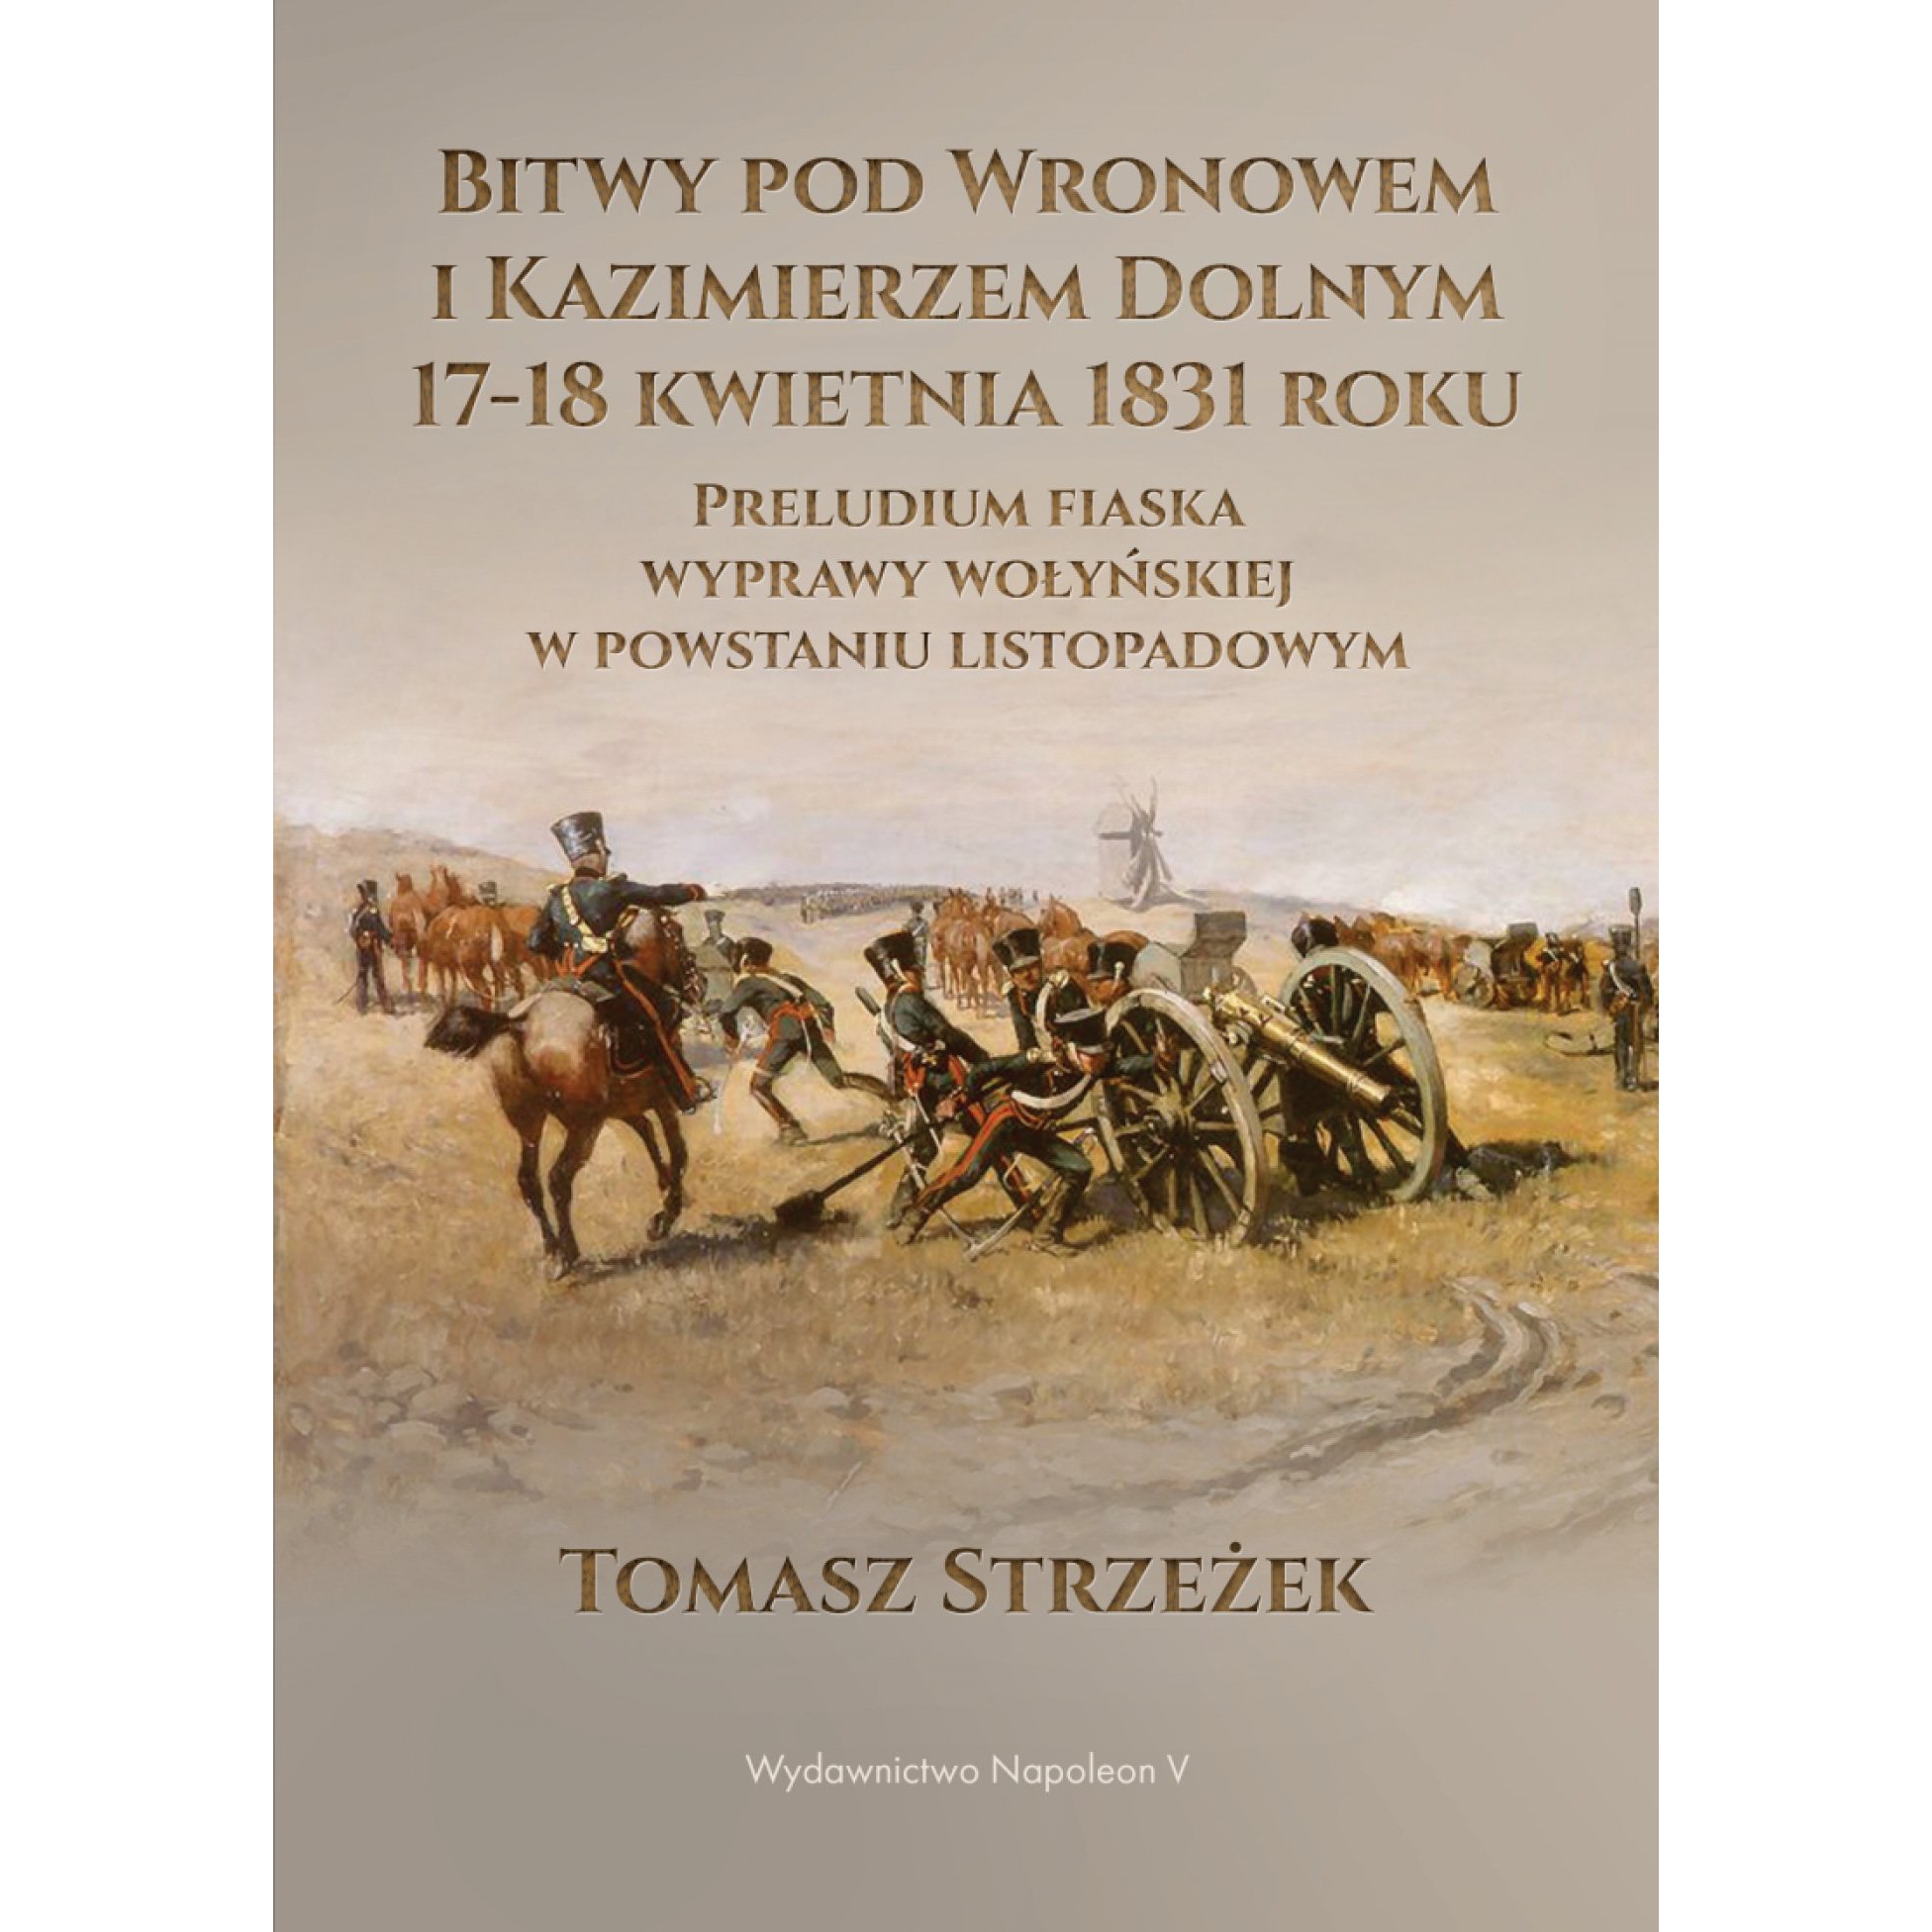 Bitwy pod Wronowem i Kazimierzem Dolnym 17-18 kwietnia 1831 roku. Preludium fiaska wyprawy wołyńskiej w powstaniu listopadowym - Outlet